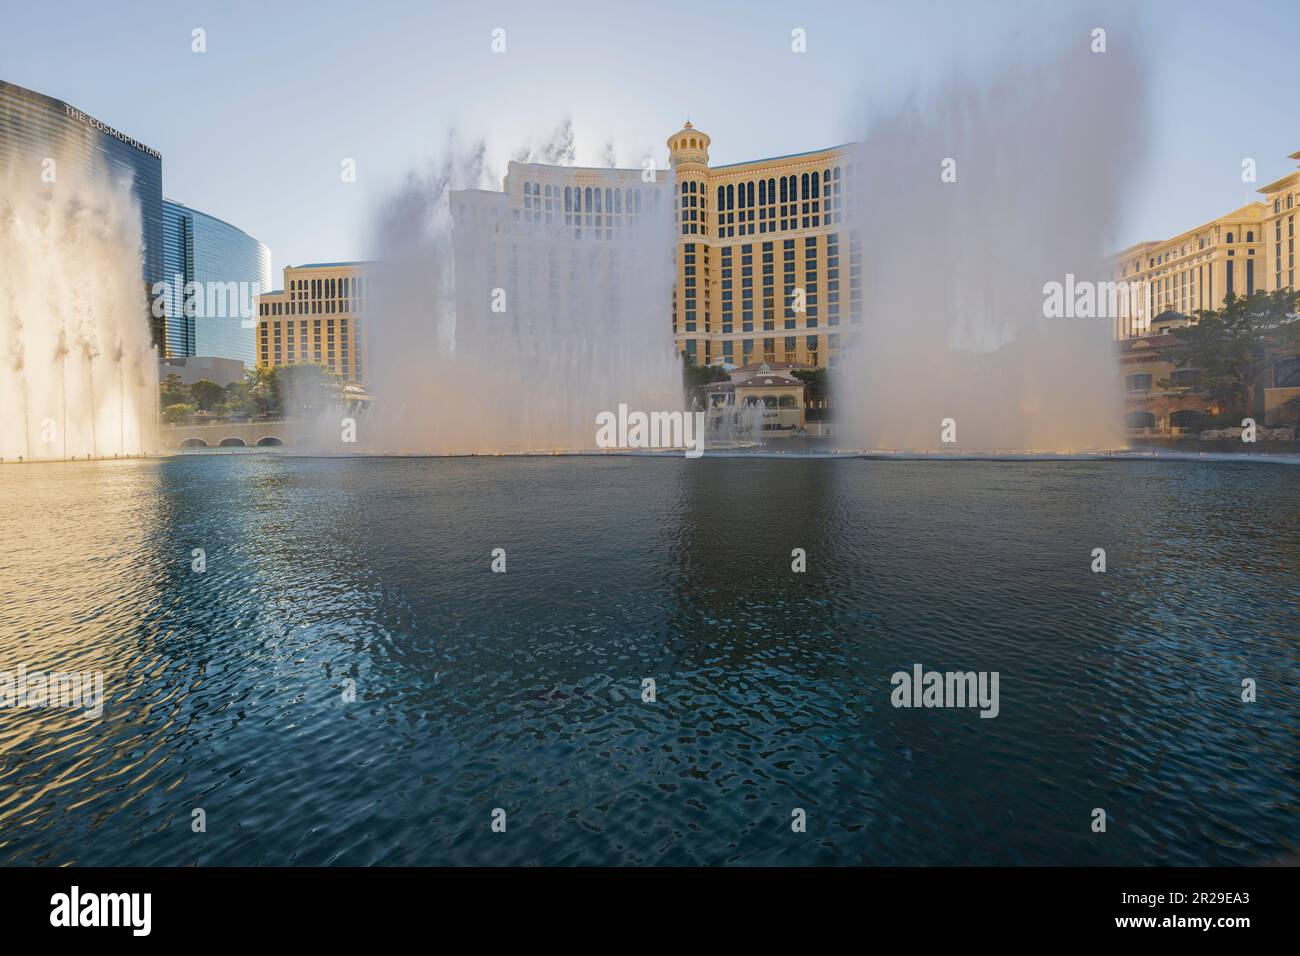 Gorgeous view of casino hotel Bellagio fountains. Las Vegas. Stock Photo